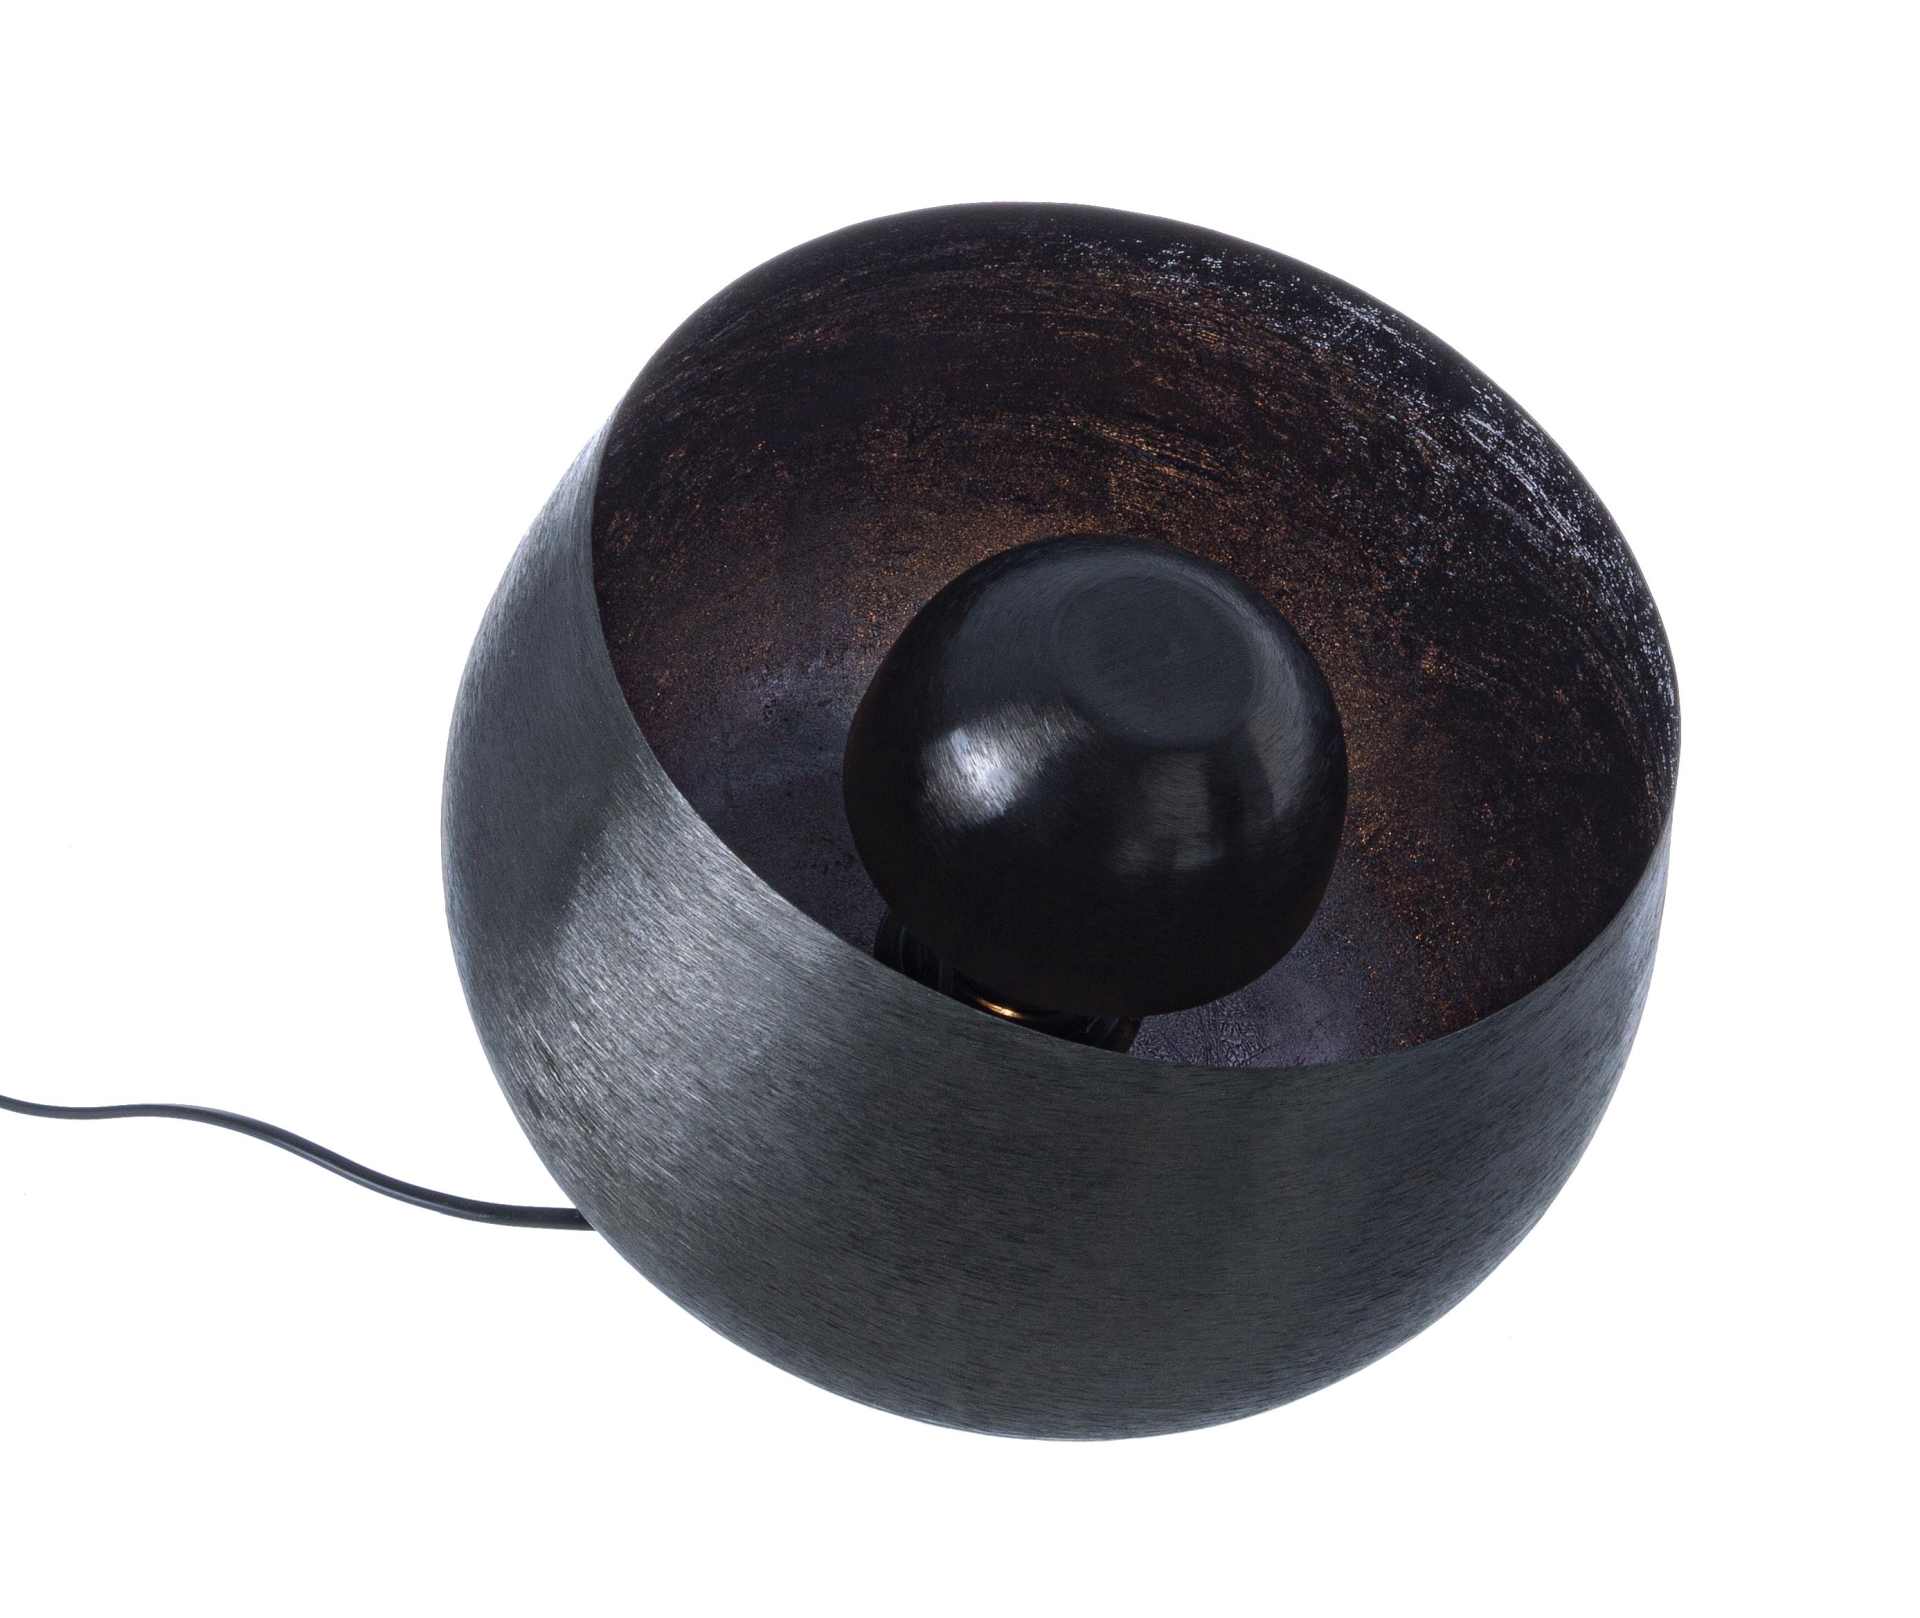 Die Tischleuchte Ishan überzeugt mit ihrem modernen Design. Gefertigt wurde sie aus Metall, welches einen schwarzen Farbton besitzt. Die Lampe hat eine Lichtquelle. Die Lampe besitzt eine Höhe von 24,5 cm.